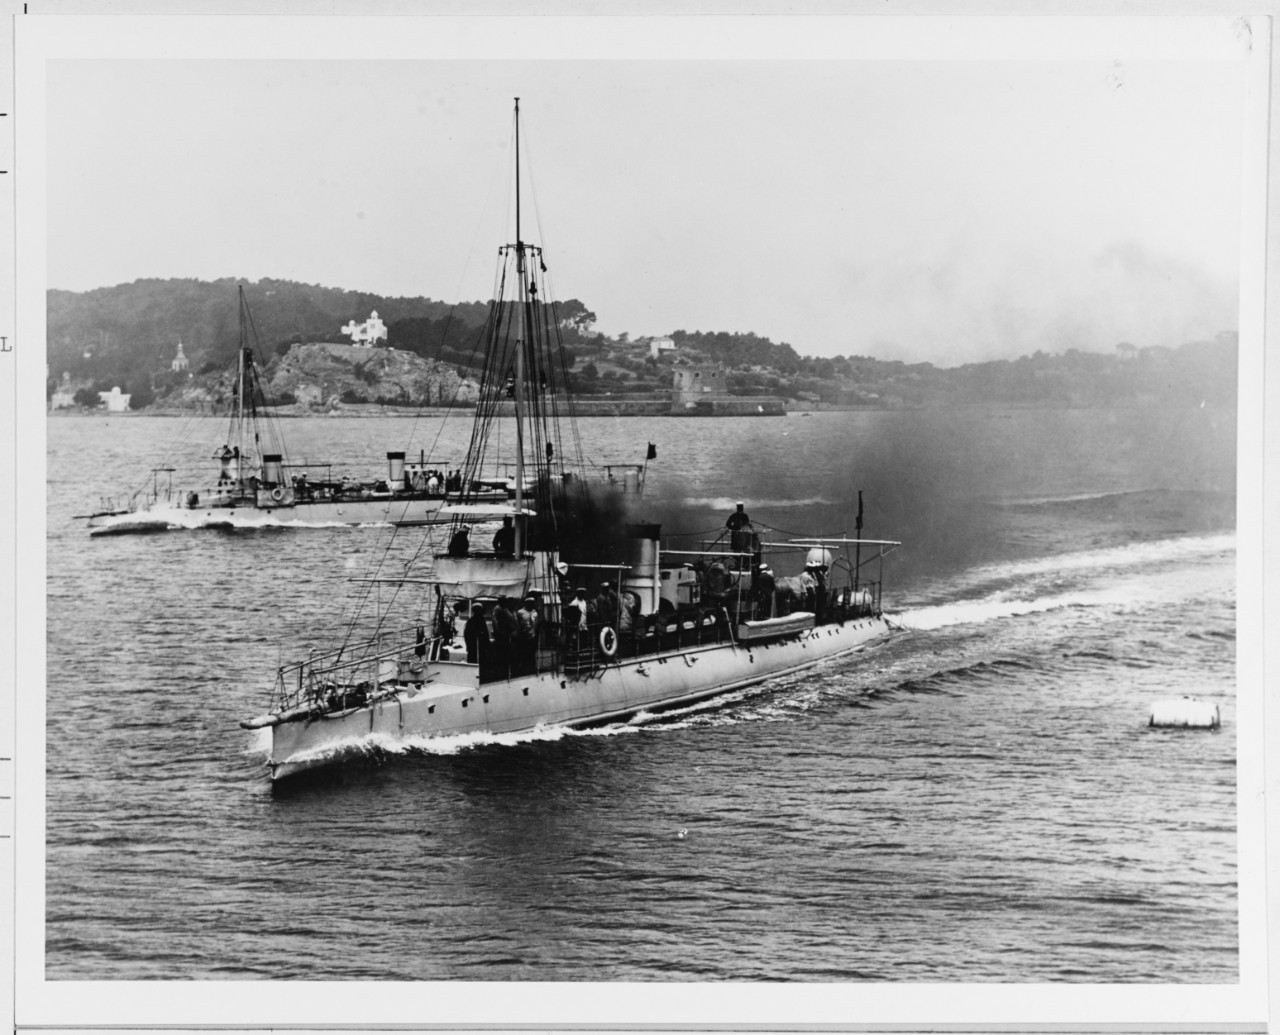 CHEVALIER (French torpedo boat, 1893)